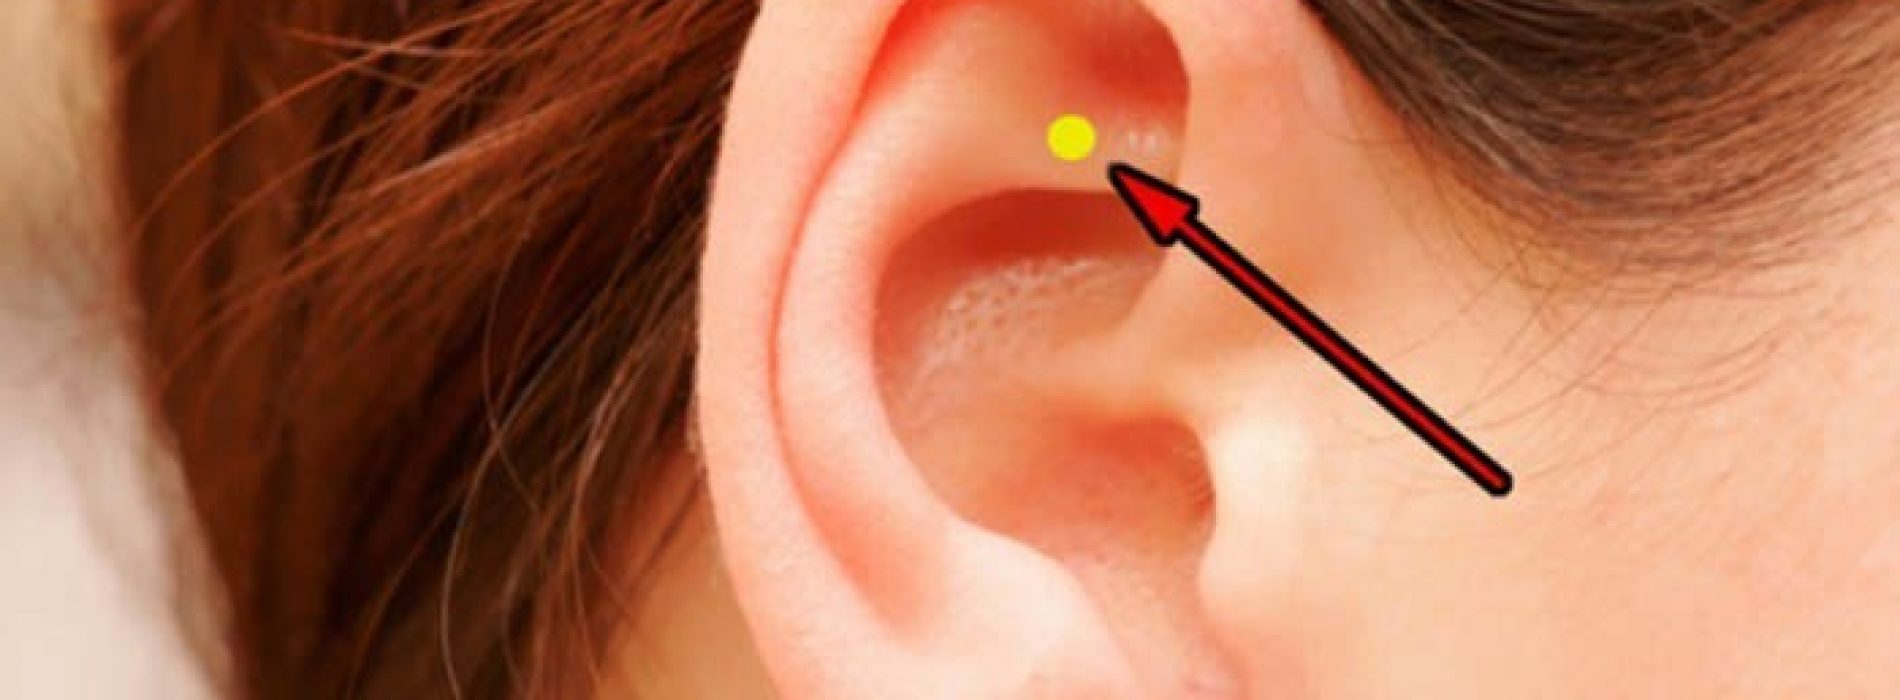 Dit gebeurt er als je dit plekje van je oor masseert. Dit moet iedereen weten!